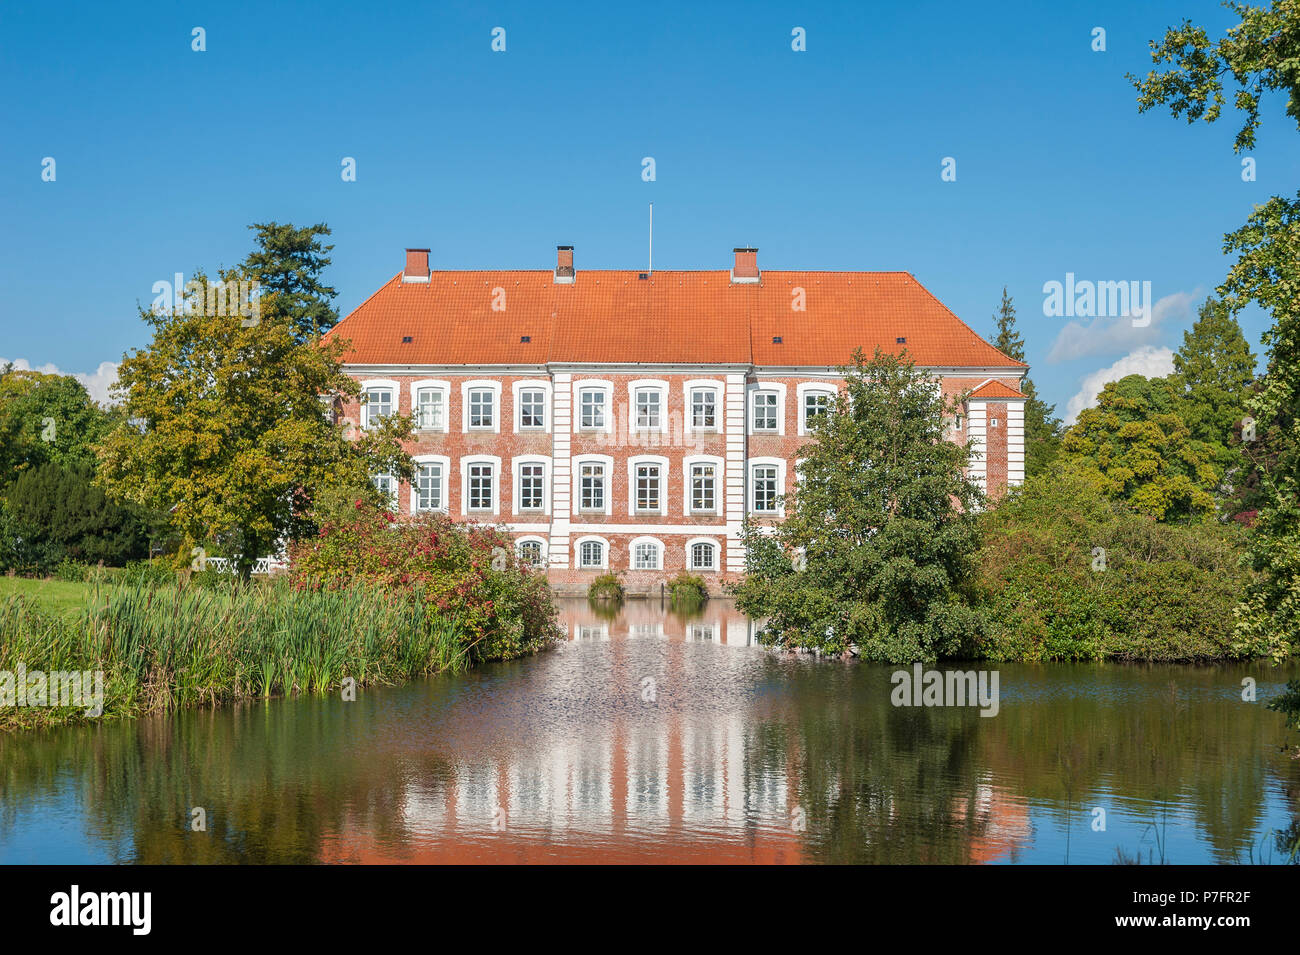 Manor House of Gut Güldenstein, Harmsdorf, Schleswig-Holstein, Germany Stock Photo